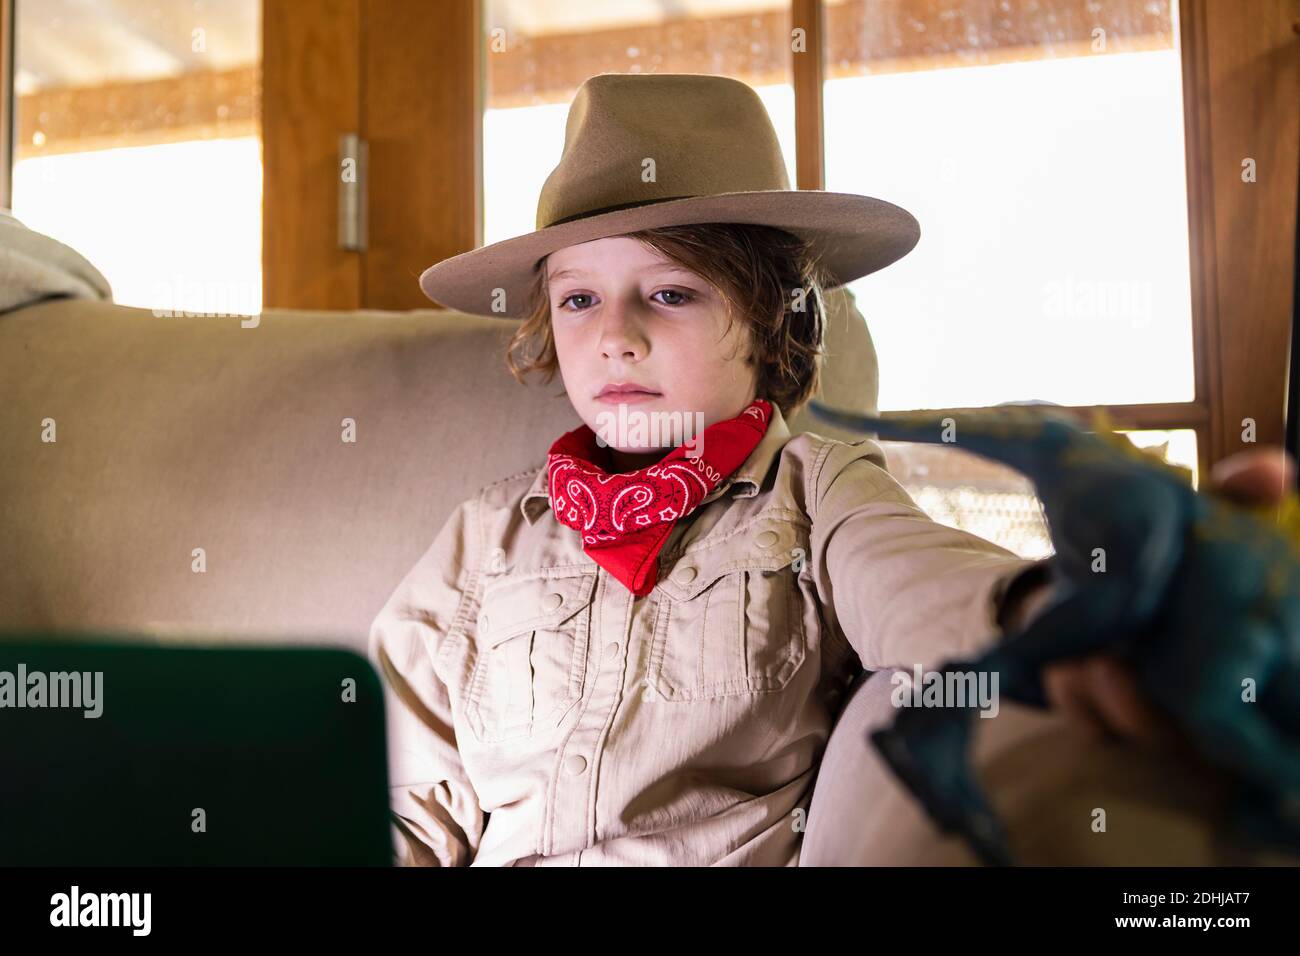 jeune garçon portant une tenue safari et un casque pour regarder un film sur ordinateur portable Banque D'Images